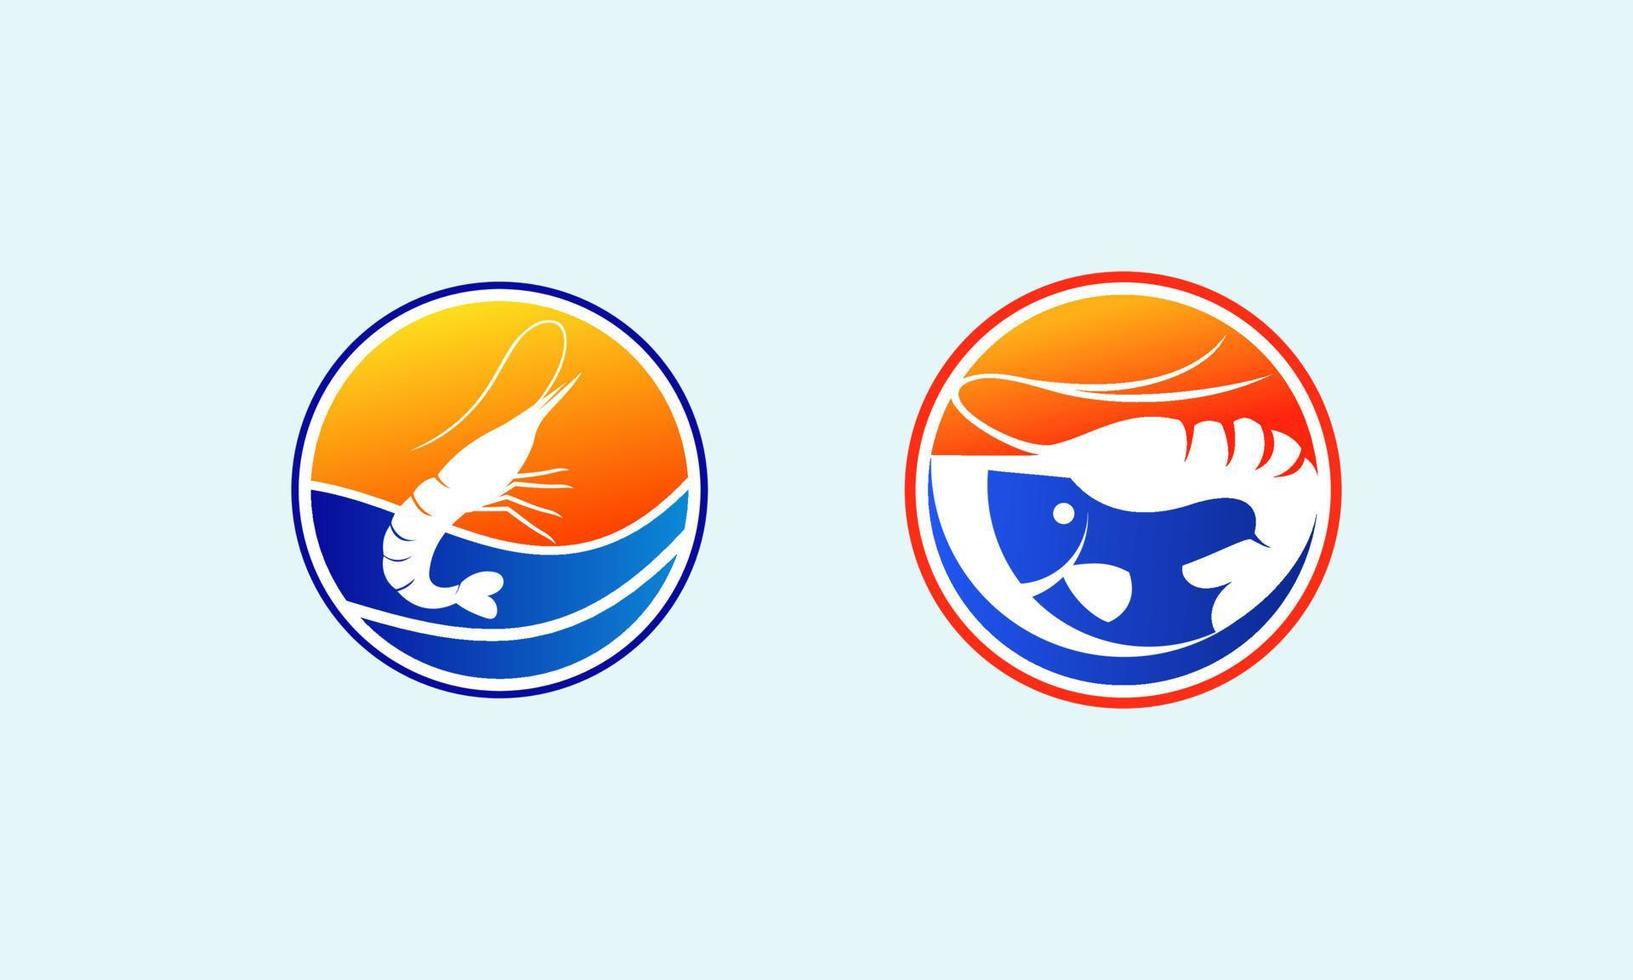 vector de diseño de logotipo estilo pescado y camarones. diseño del logo de pescado y camarones. diseño de logotipo para la marca de una empresa relacionada con la pesca o el marisco